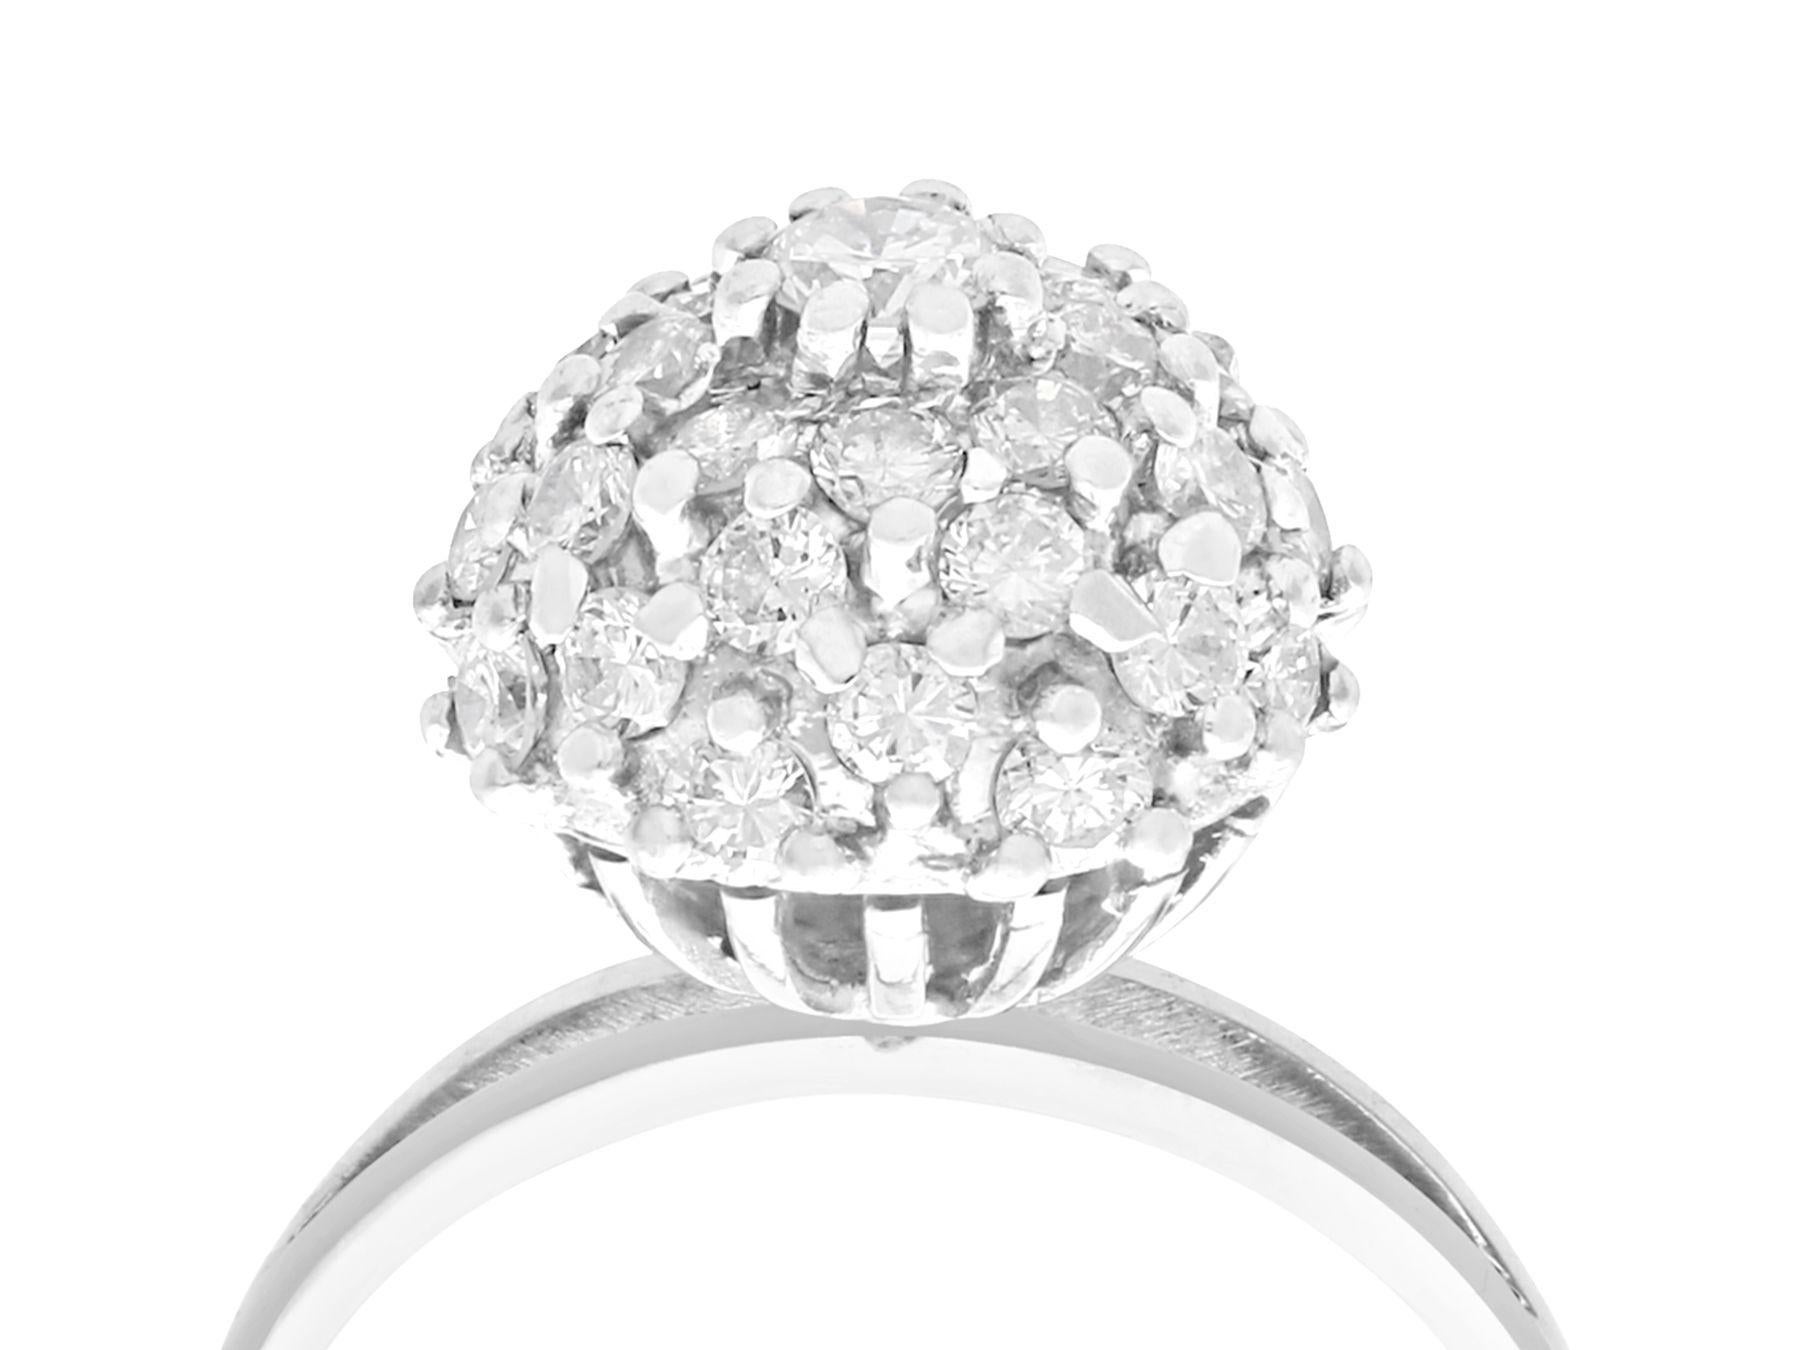 Ein schöner und beeindruckender Vintage-Ring aus 1,07 Karat Diamanten und 18 Karat Weißgold im Art-Déco-Stil; Teil unserer vielfältigen Vintage-Schmuckkollektionen.

Dieser schöne und beeindruckende Vintage-Diamantenring aus den 1950er Jahren ist